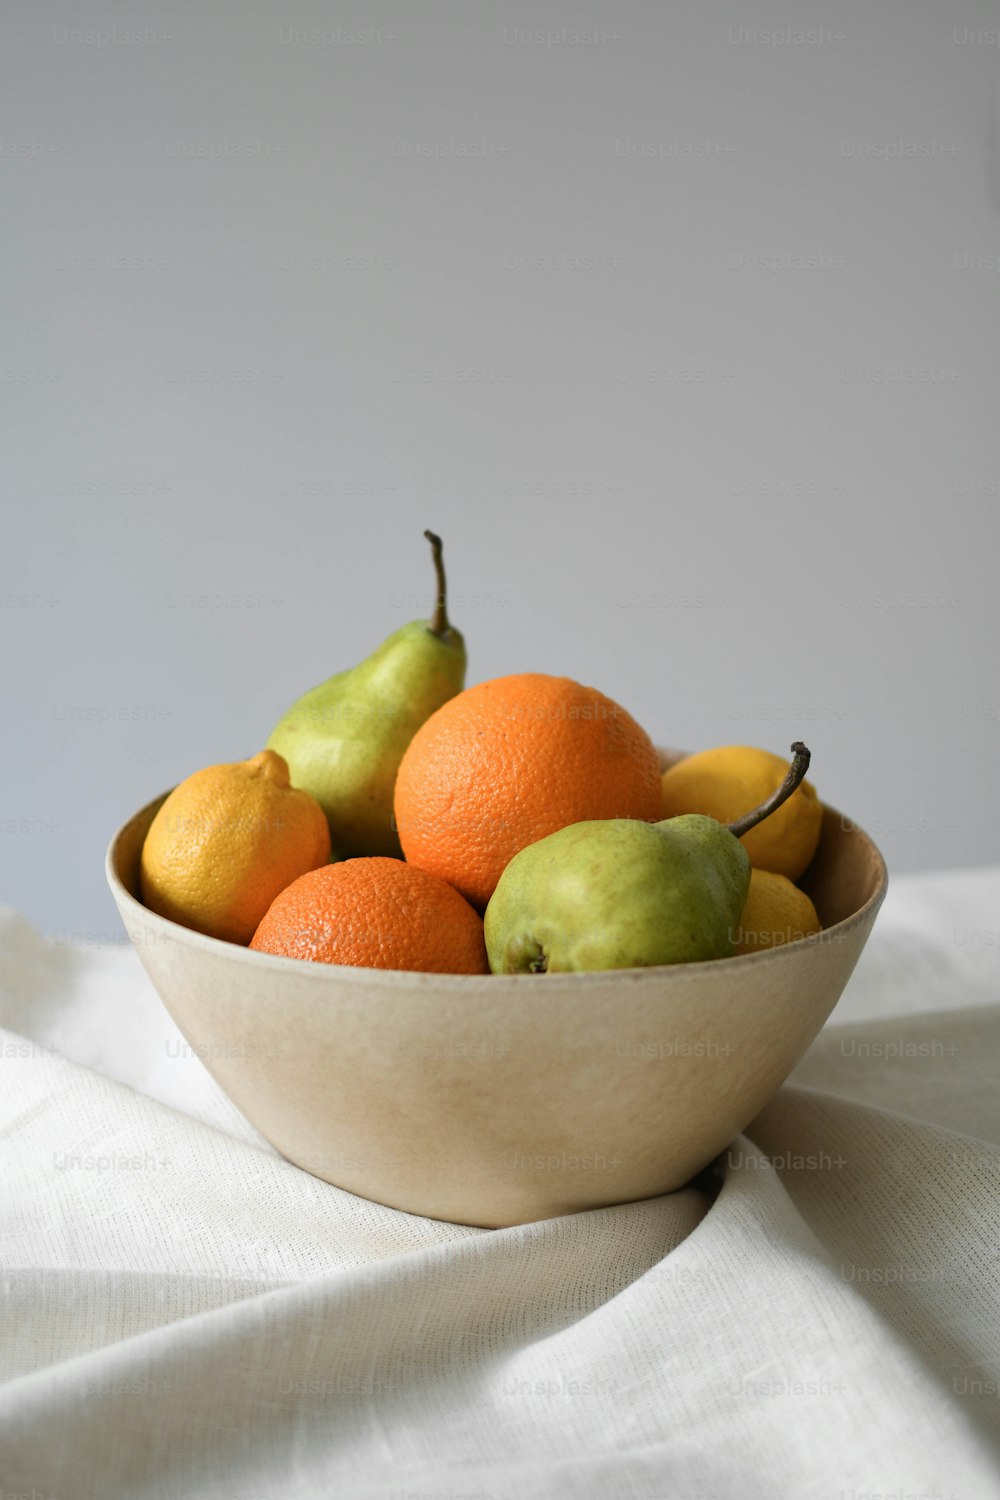 흰 천에 오렌지와 배 한 그릇